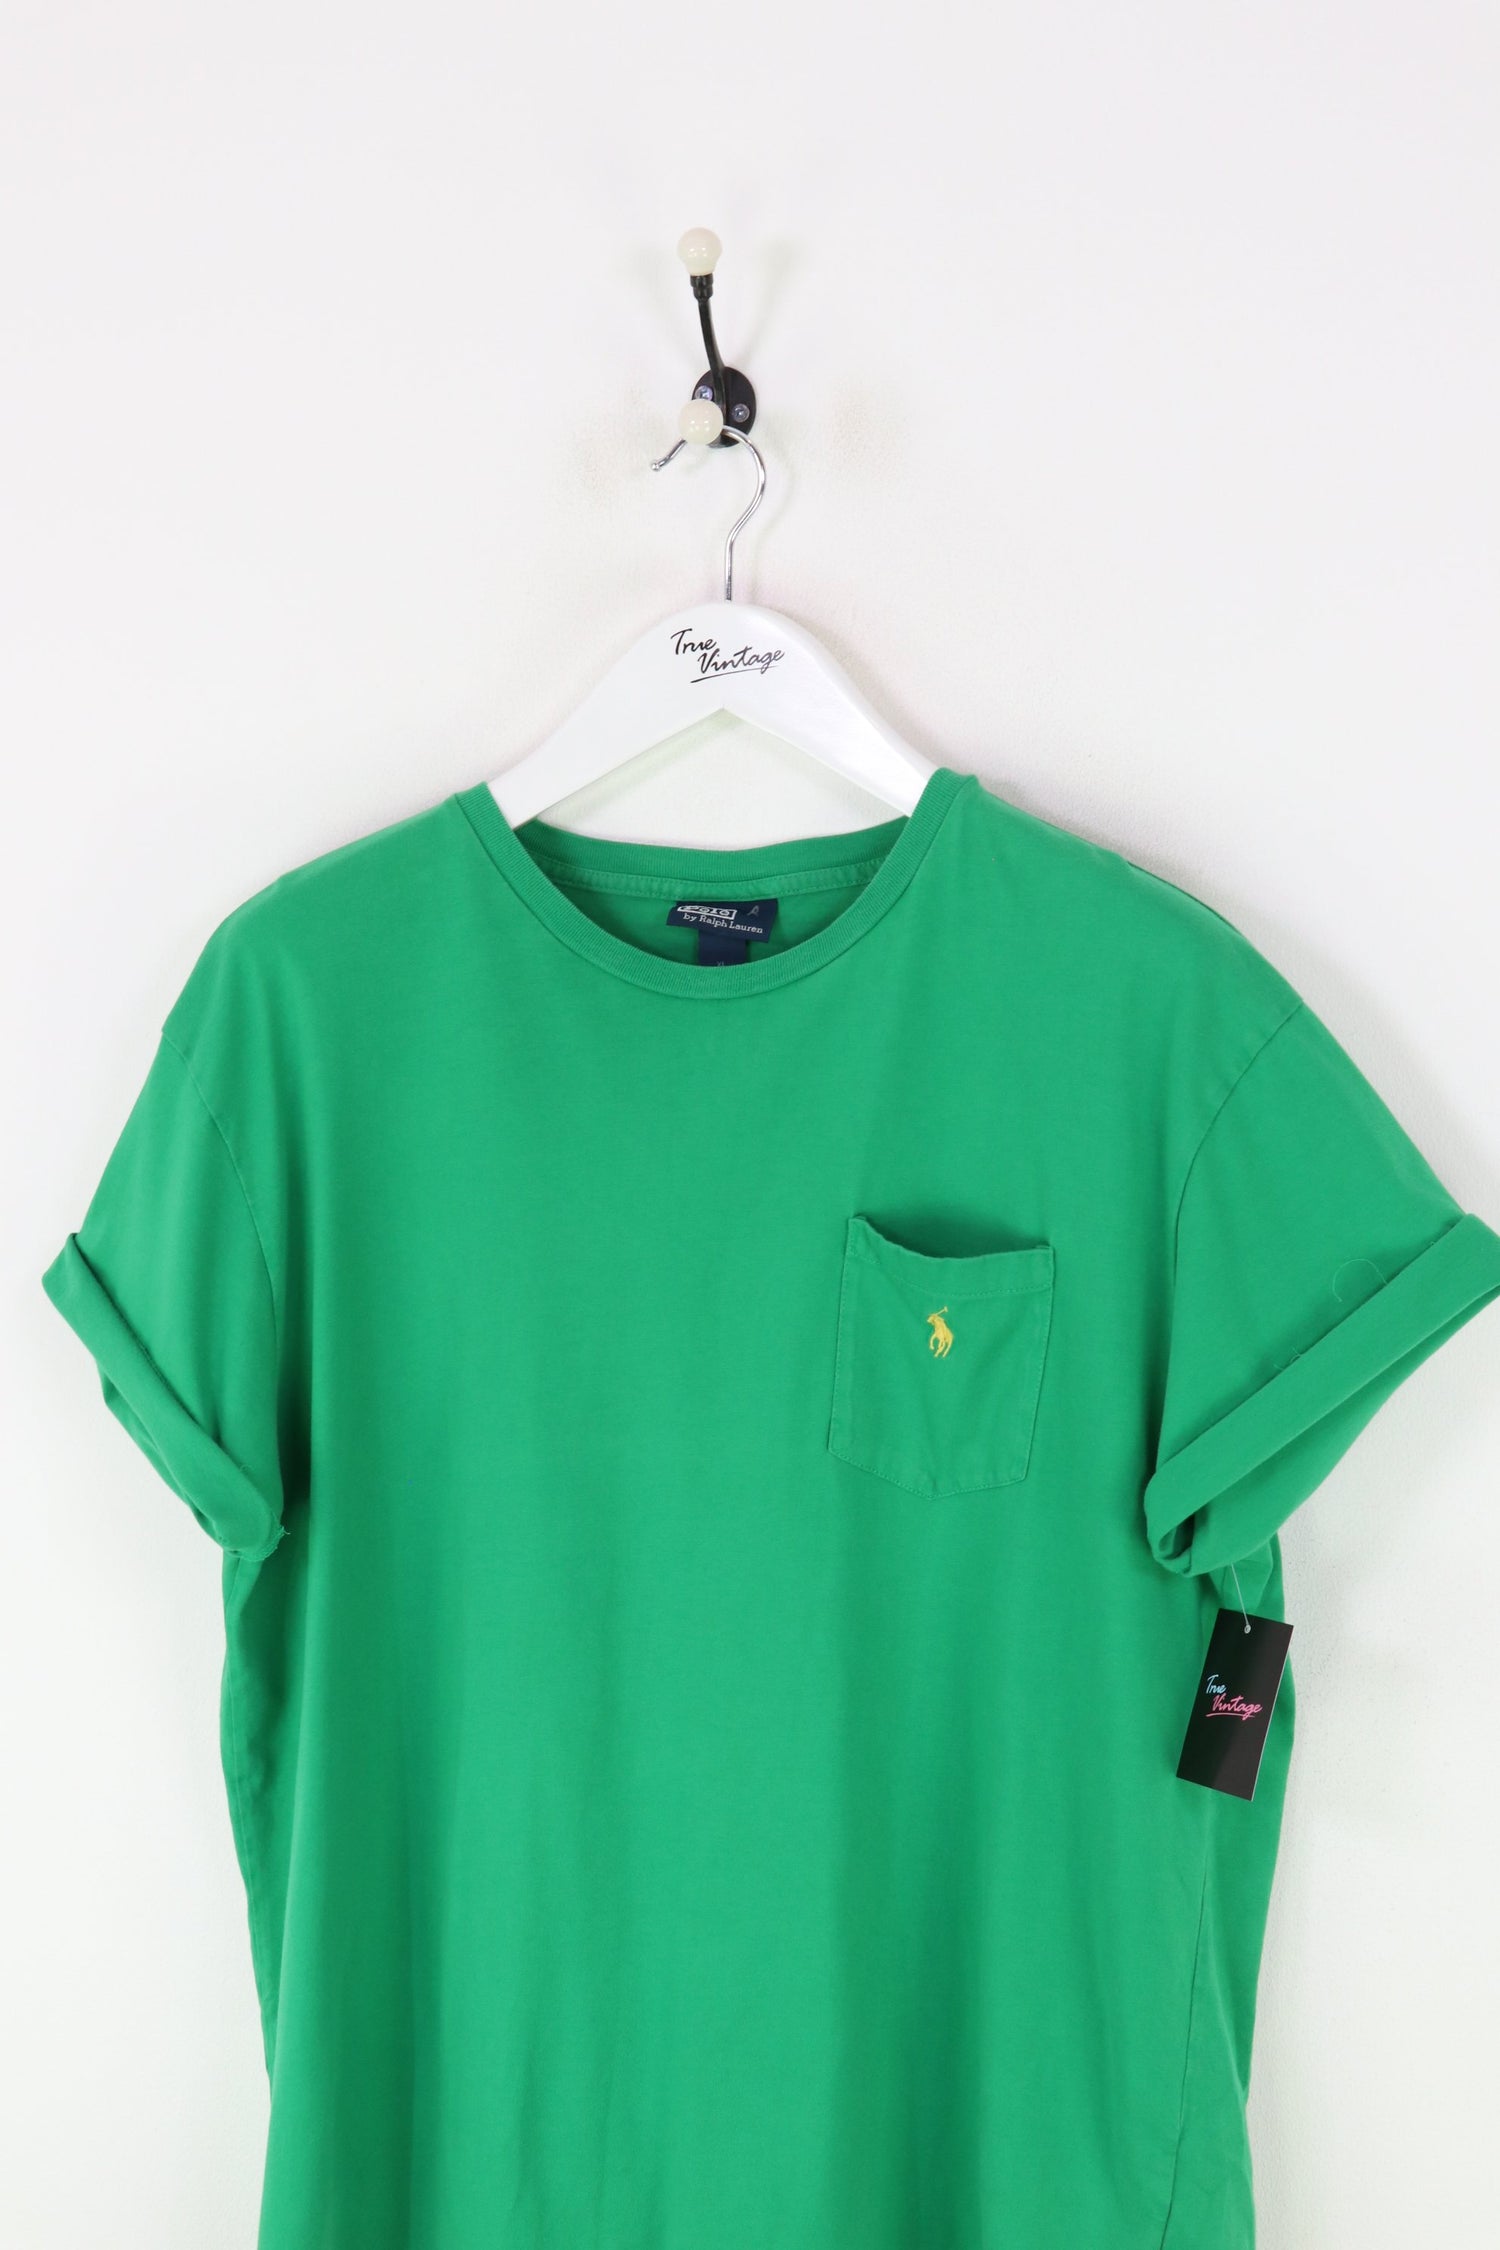 Ralph Lauren T-shirt Green Large